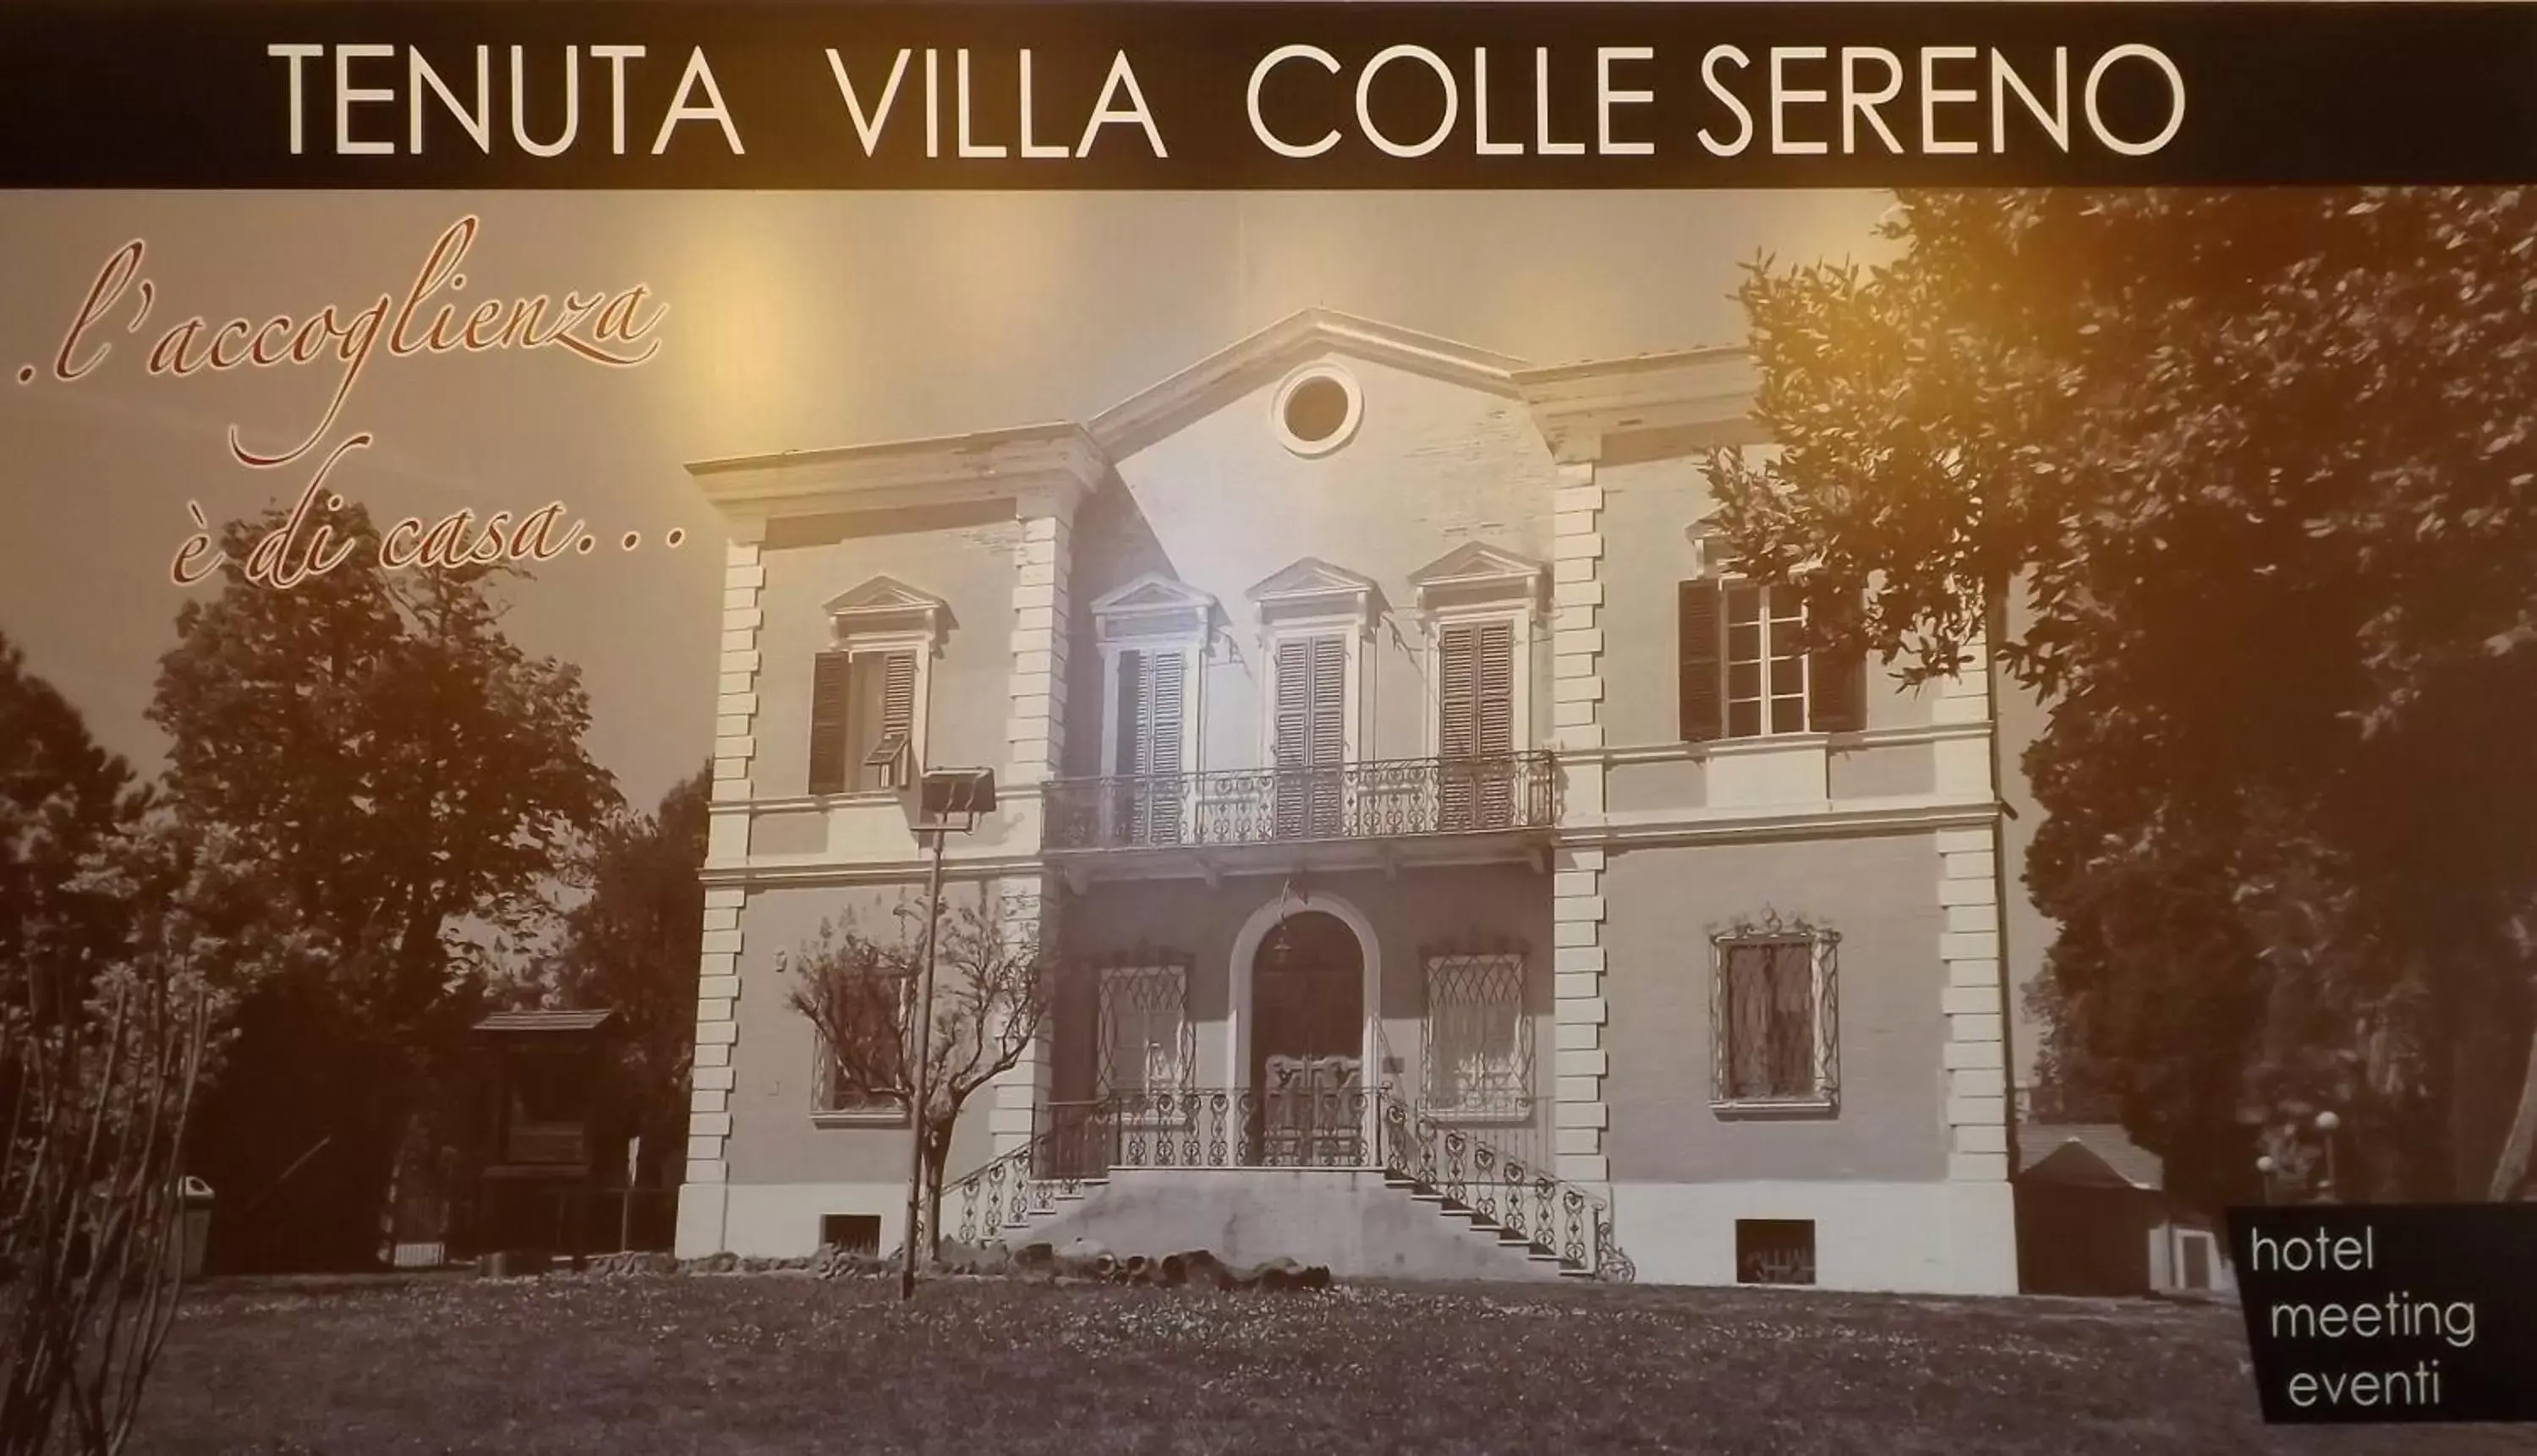 Logo/Certificate/Sign, Property Building in Tenuta Villa Colle Sereno